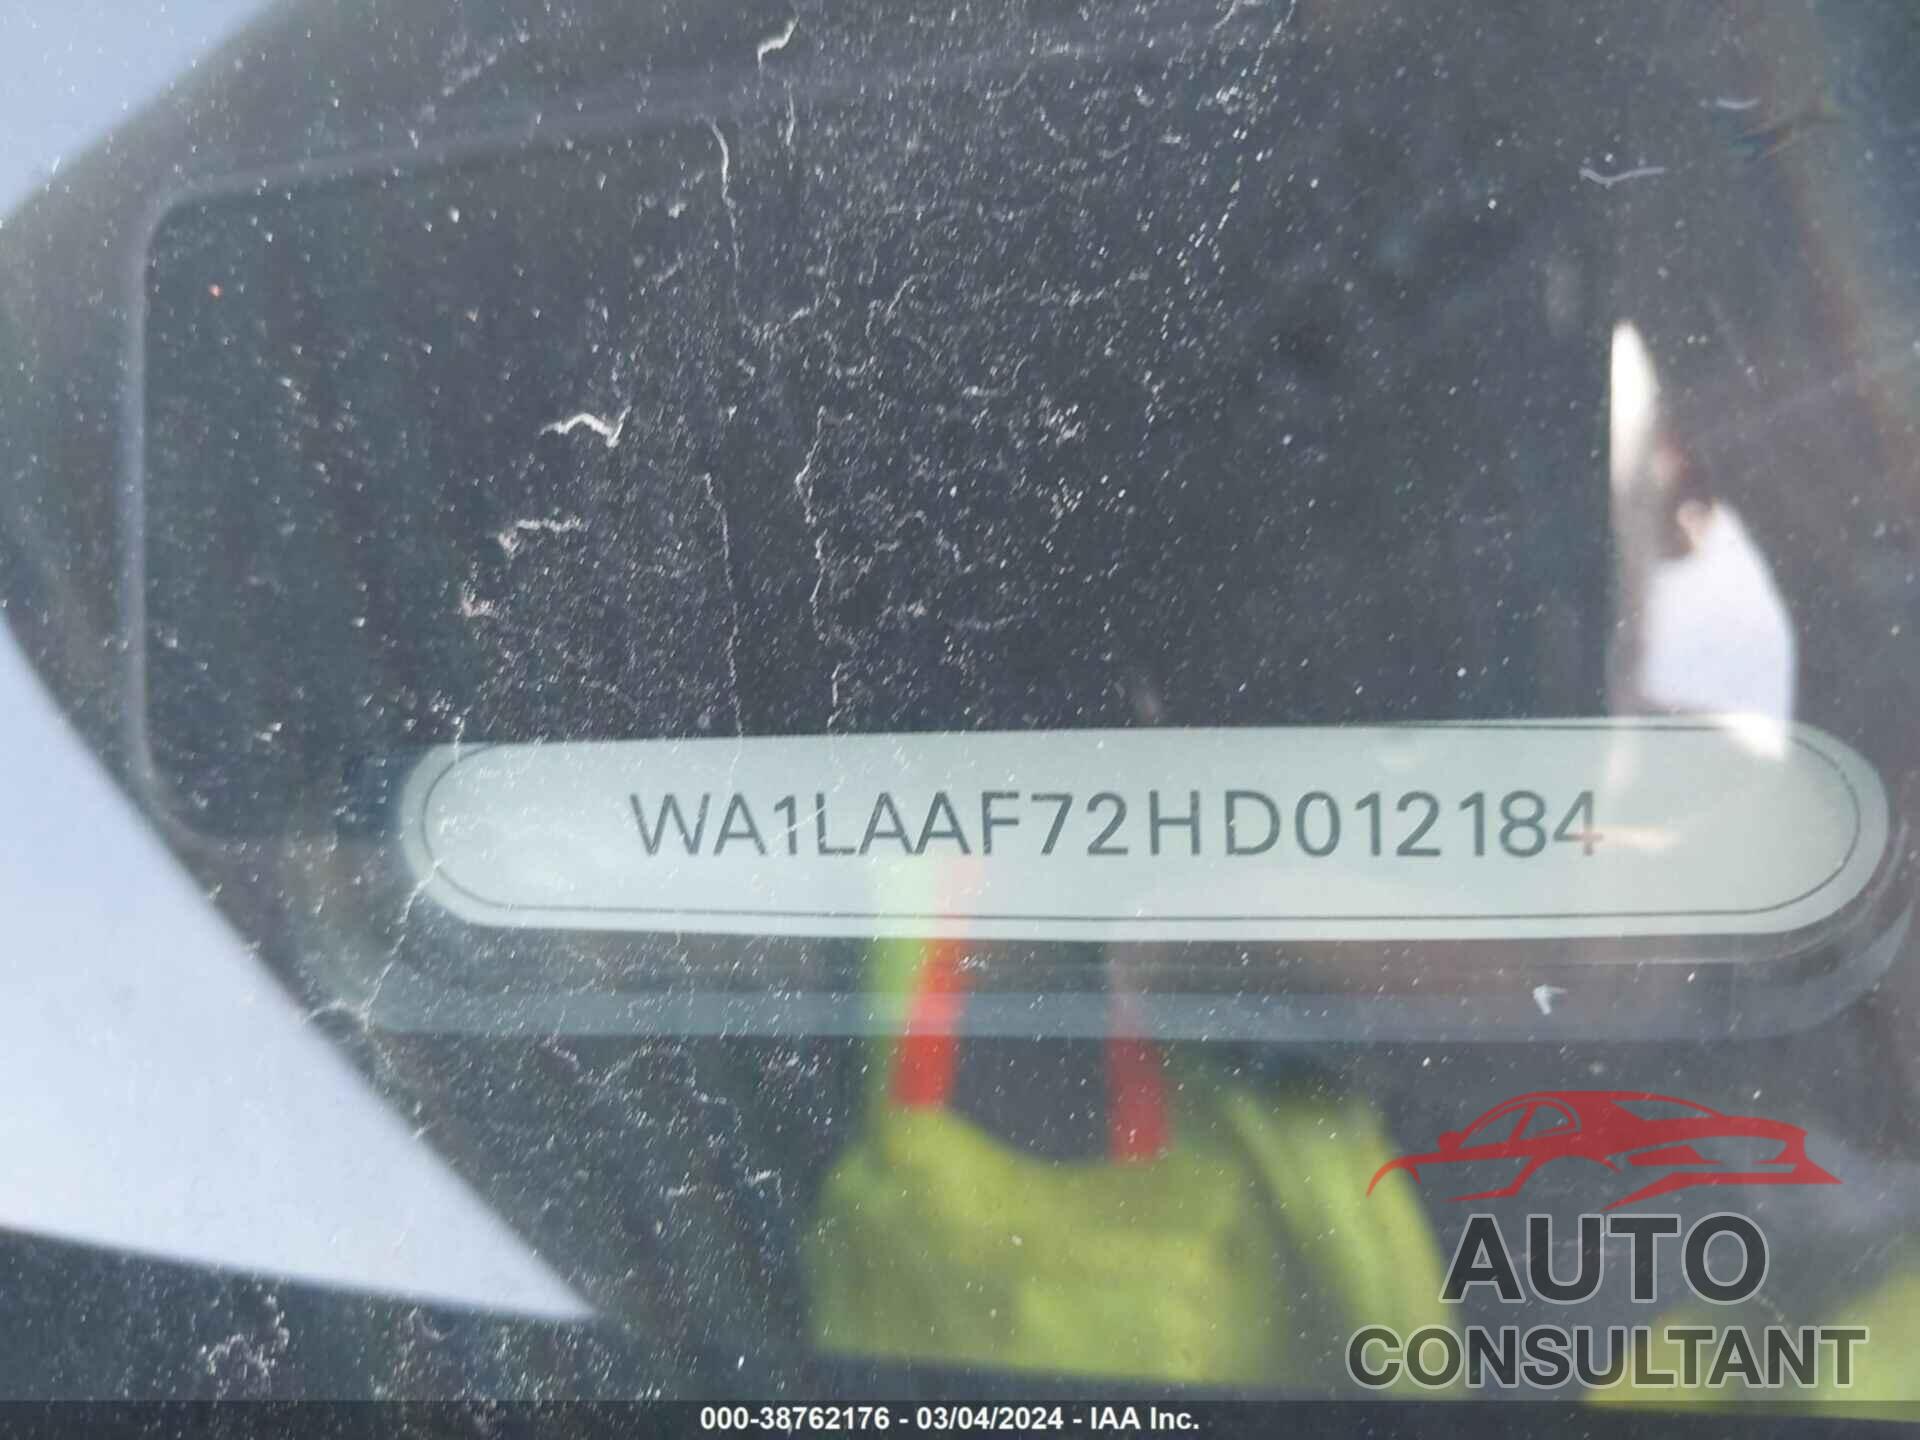 AUDI Q7 2017 - WA1LAAF72HD012184